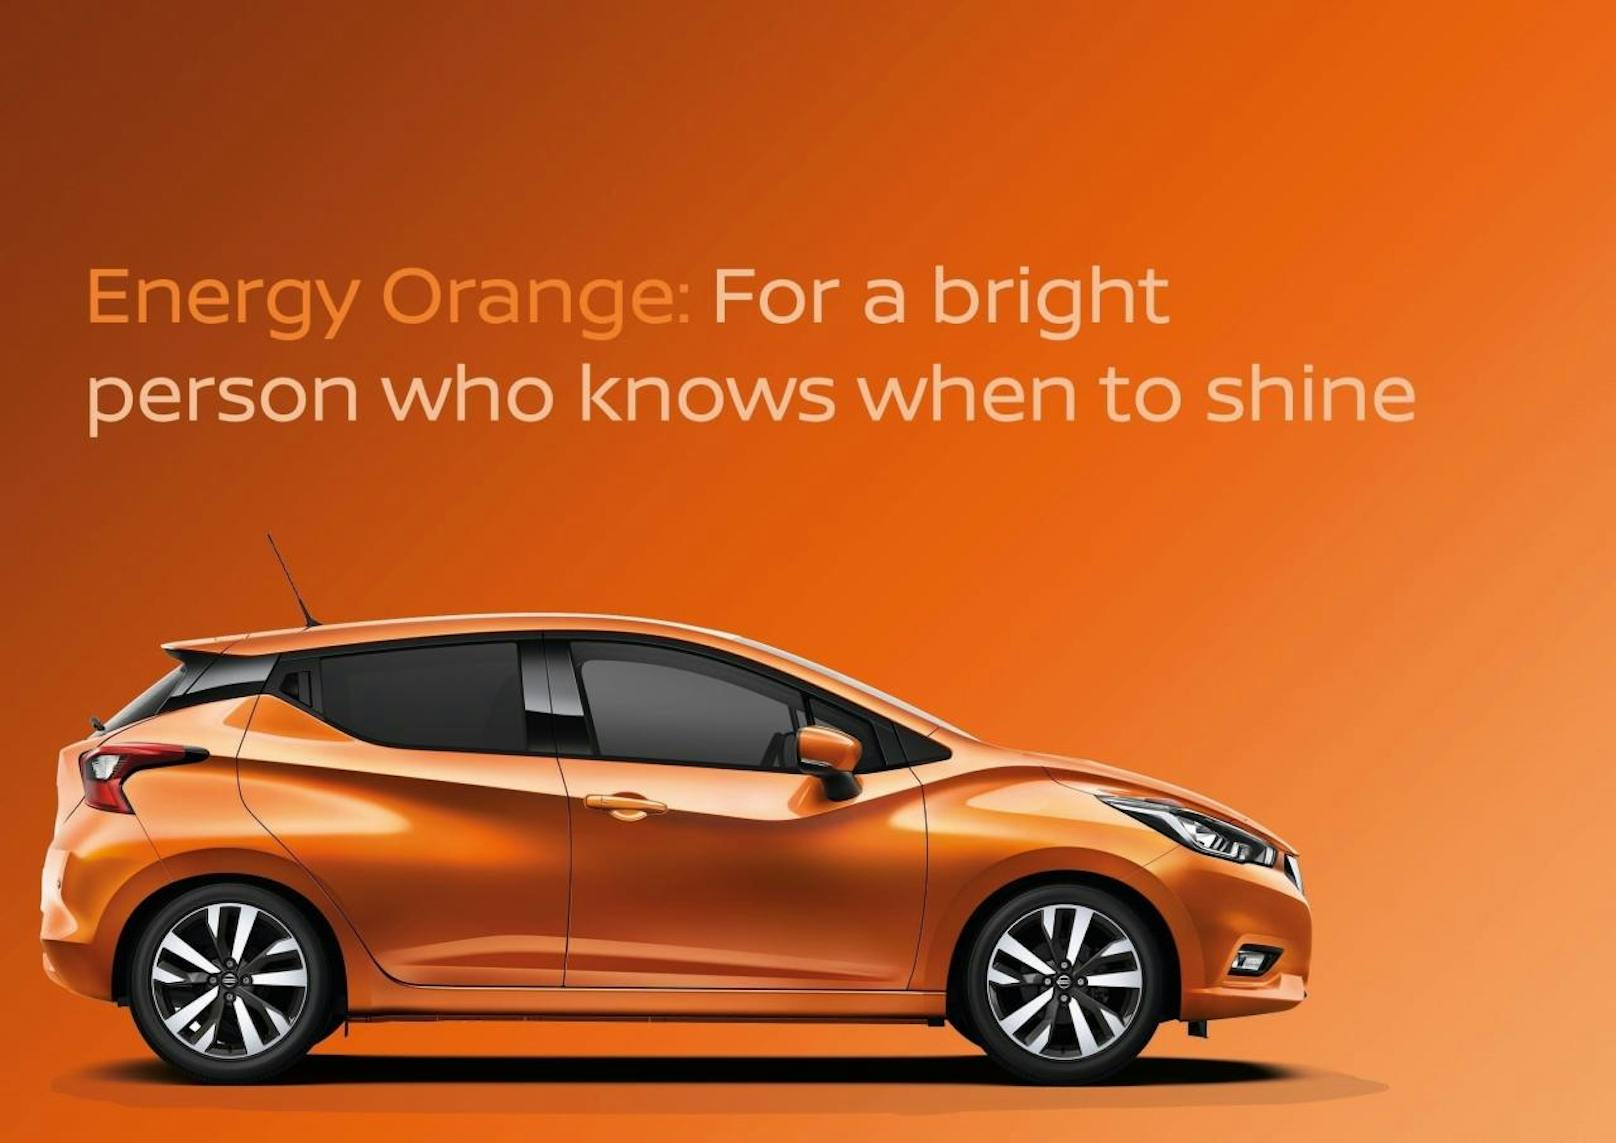 Die Autofarbe Orange deutet auf persönliche Eigenschaften wie Dynamik, Freude und Optimismus hin.